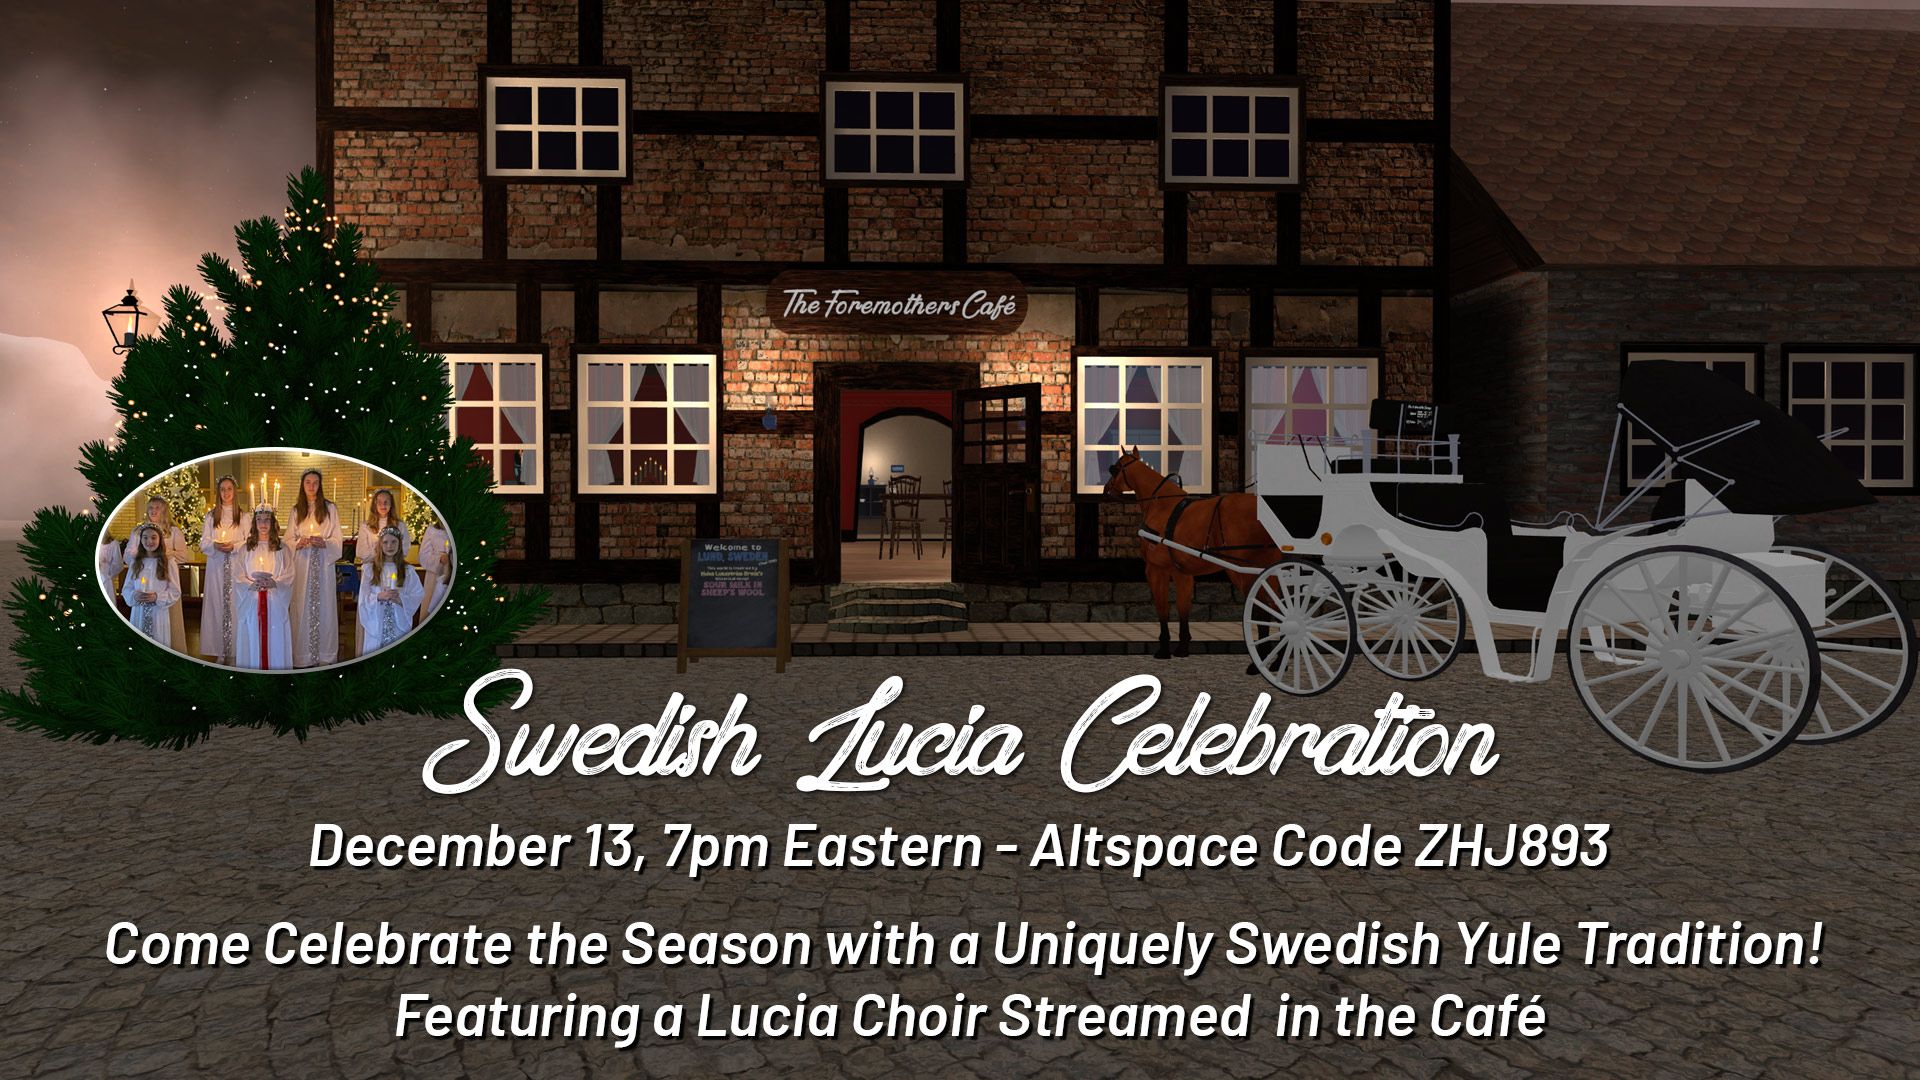 Swedish Lucia Celebration